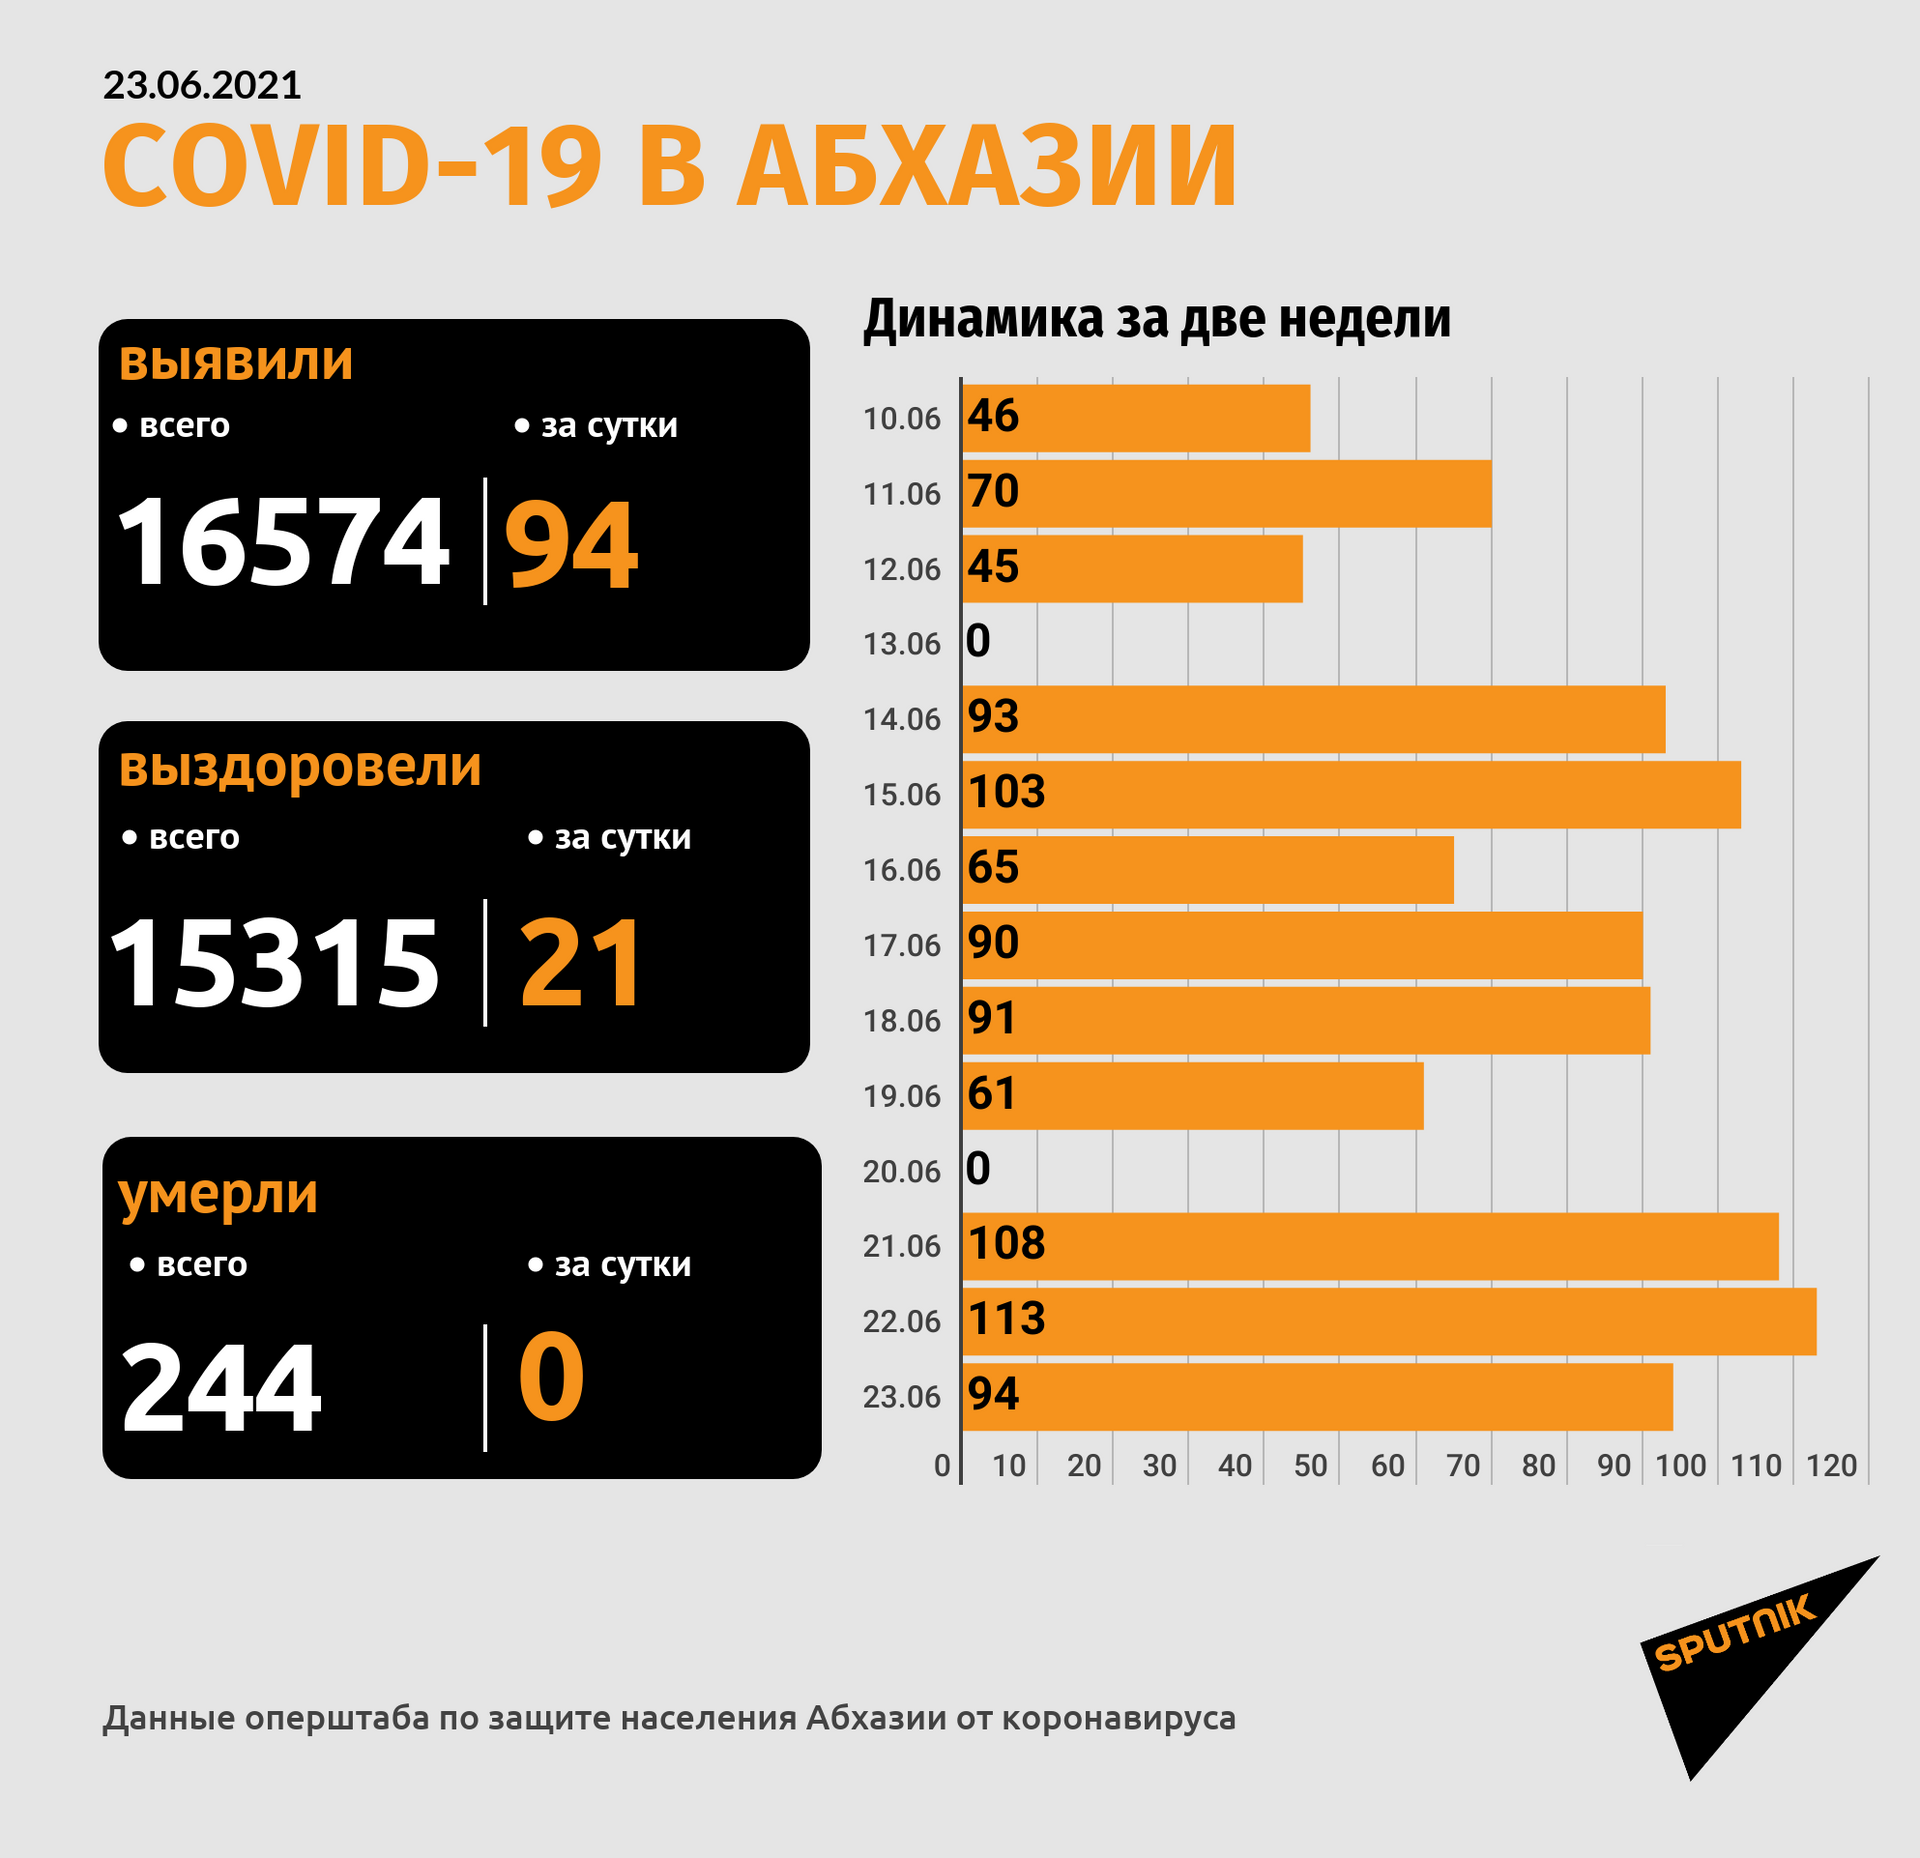 Еще 94 новых случая COVID-19 зафиксировано в Абхазии - Sputnik Абхазия, 1920, 23.06.2021